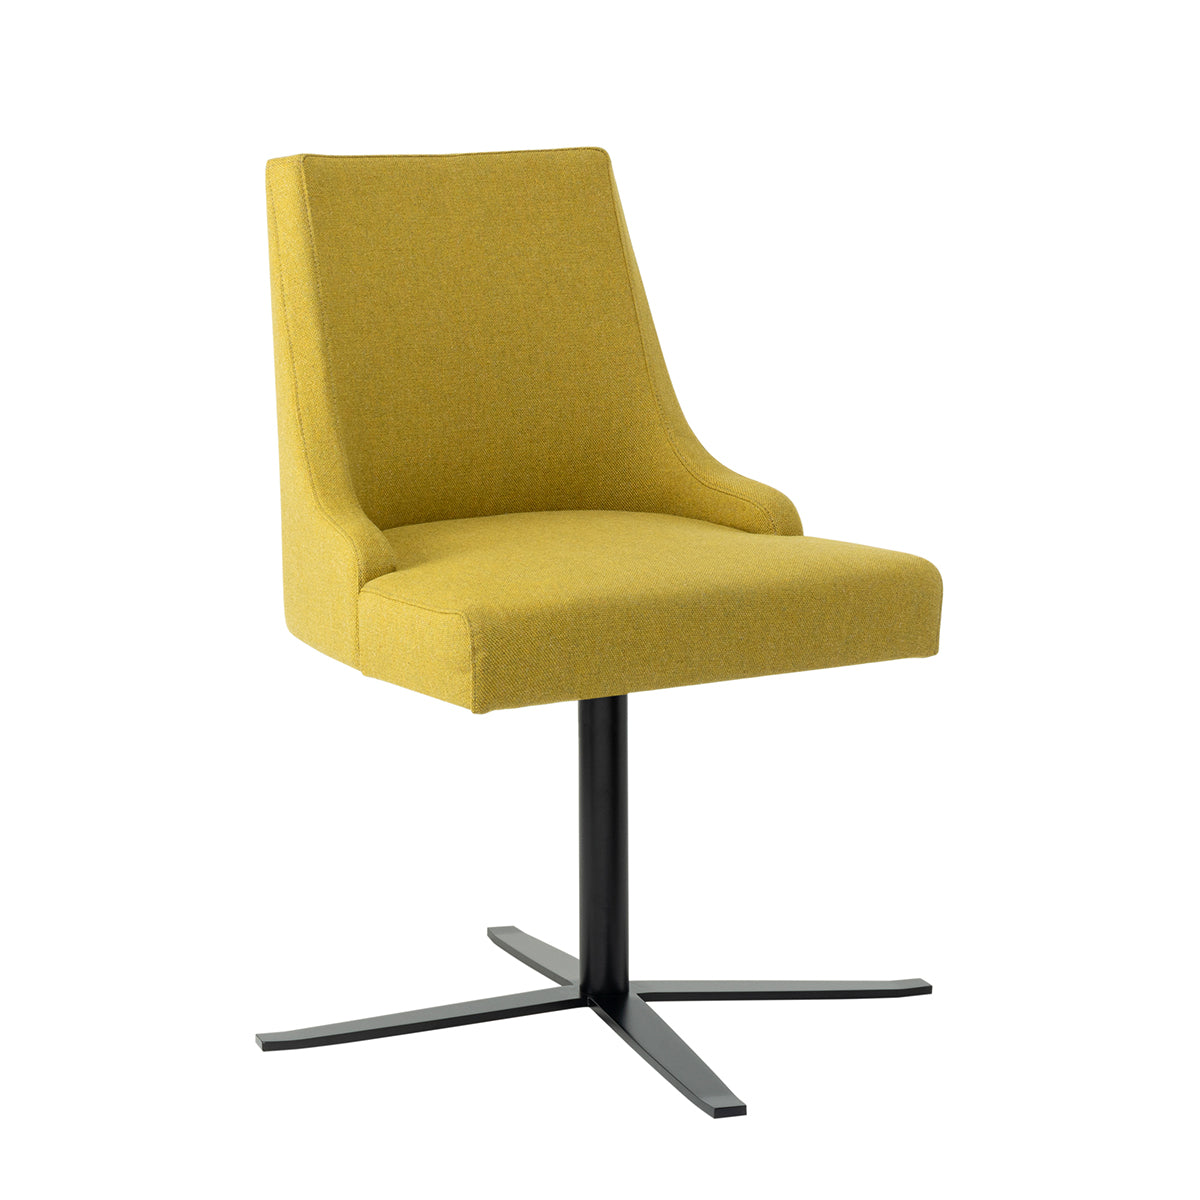 Komfortabler Polster-Stuhl 'Lena' mit vierstrahl Gestell | drehbar | Metall schwarz lackiert | in verschiedenen Ausführungen | Hergestellt in Italien